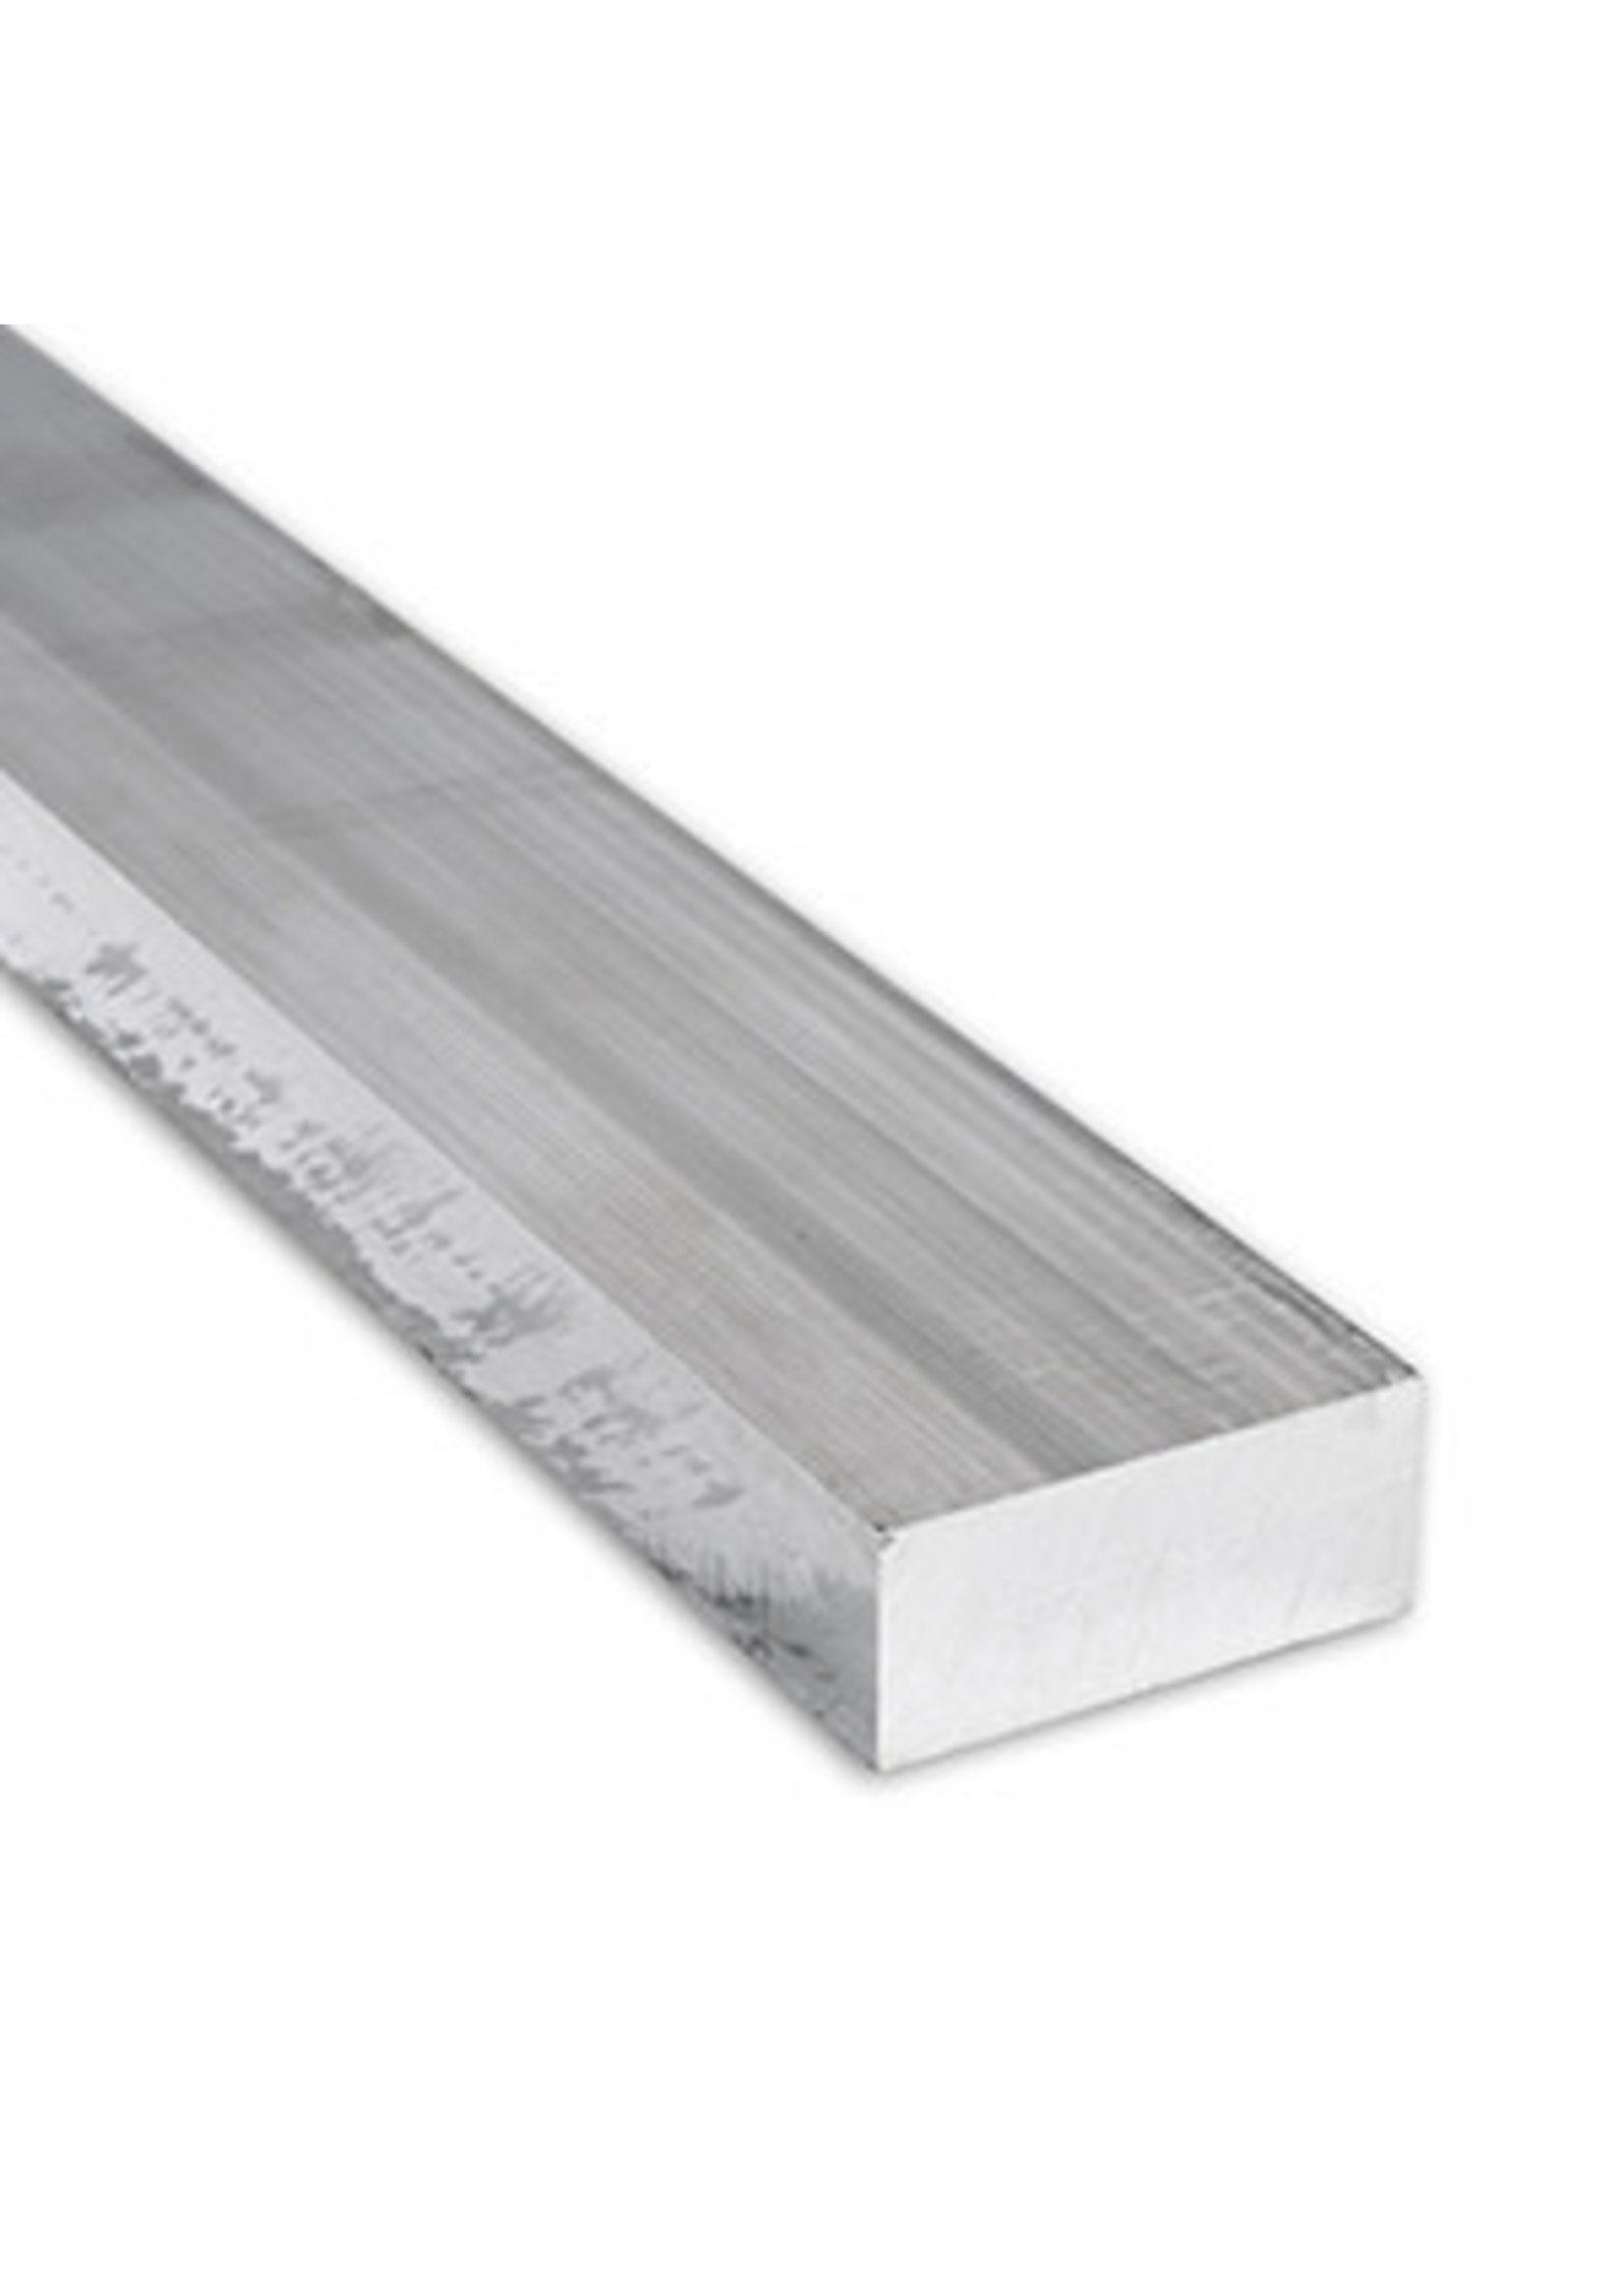 Aluminum  Bar Stock, (6061), 1/2'' X 3/4'' x6'